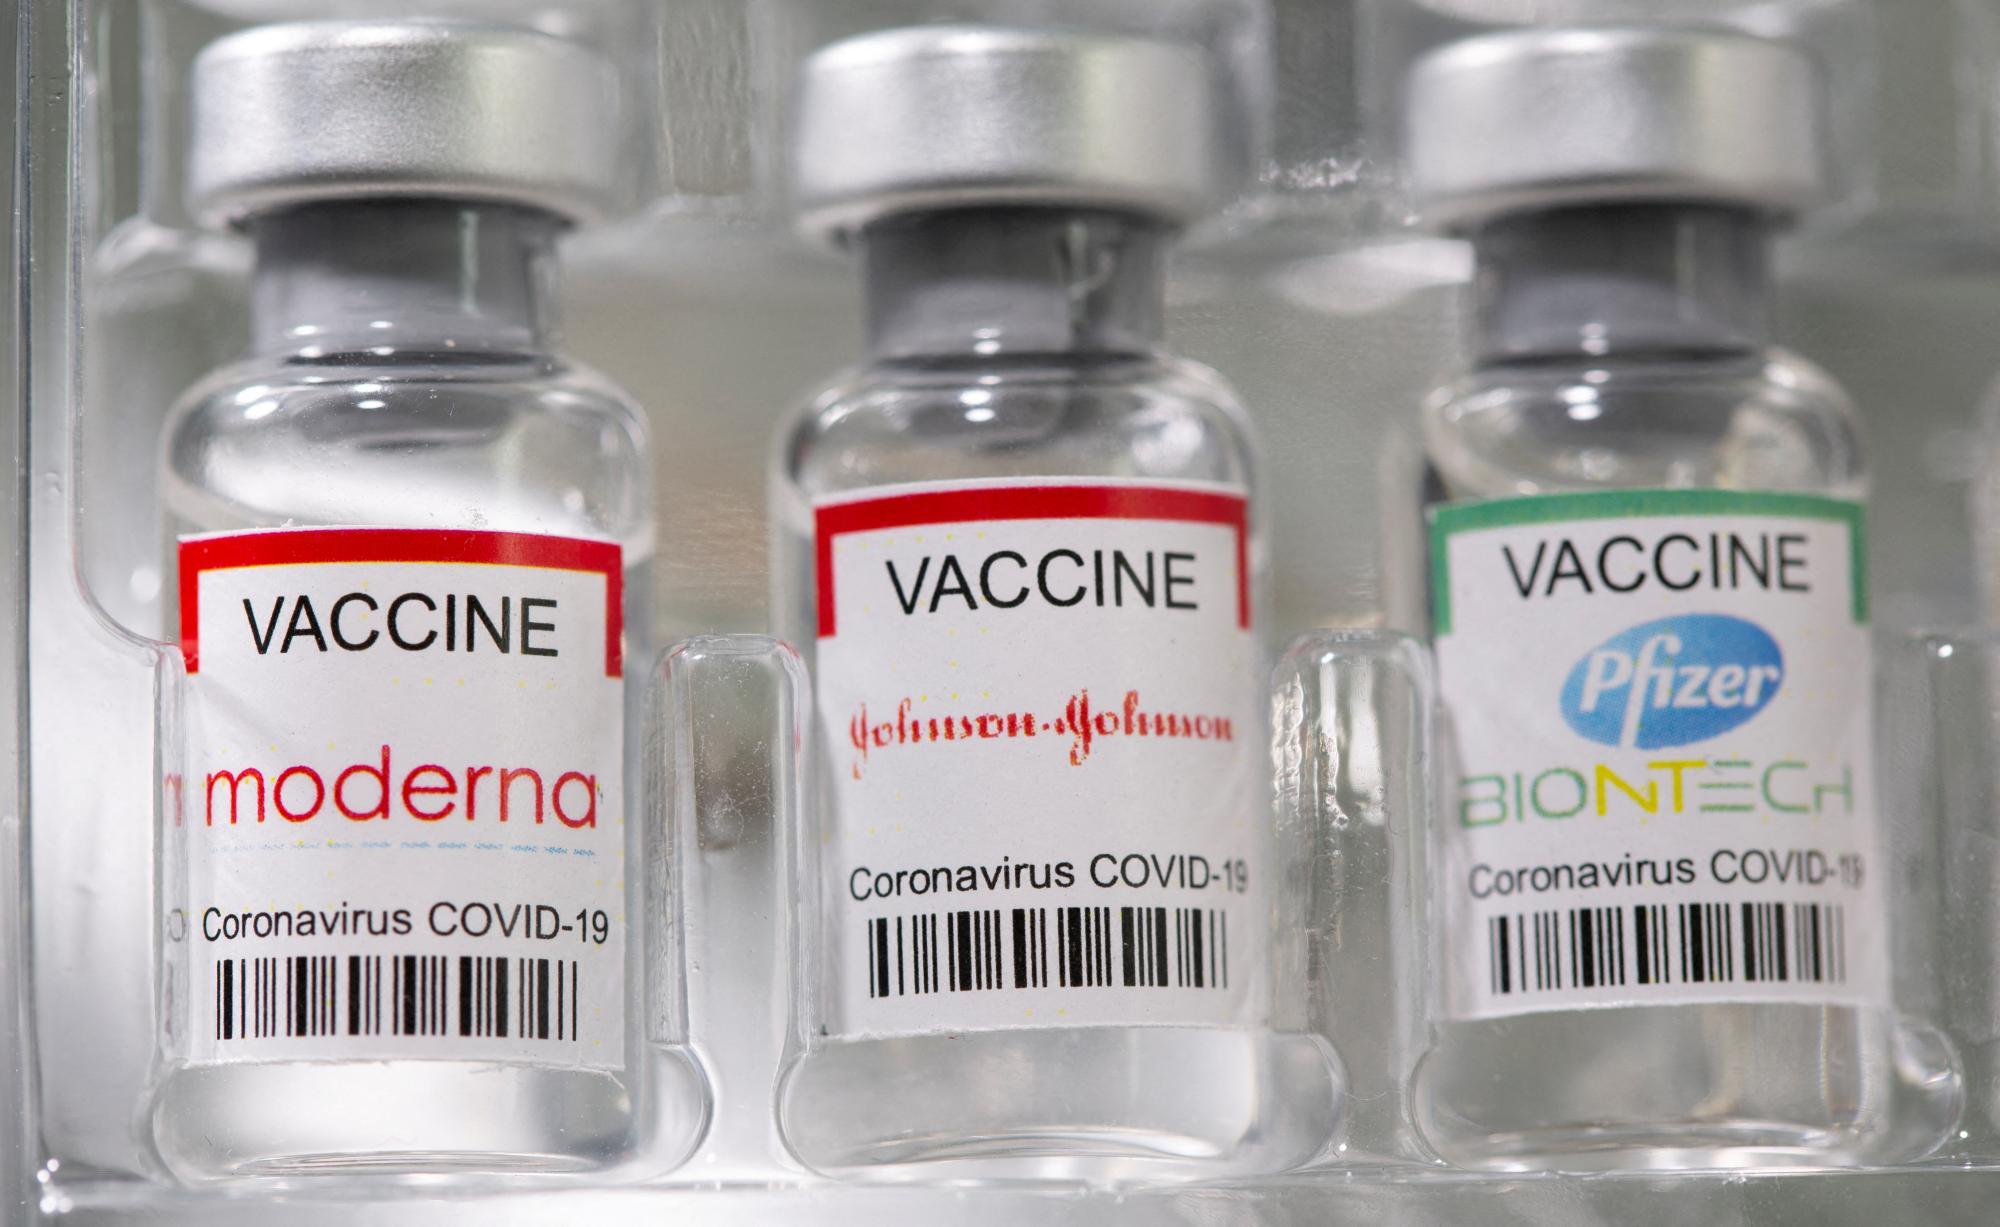 Streit um Corona-Impfstoff: Moderna gewinnt gegen Biontech und Pfizer